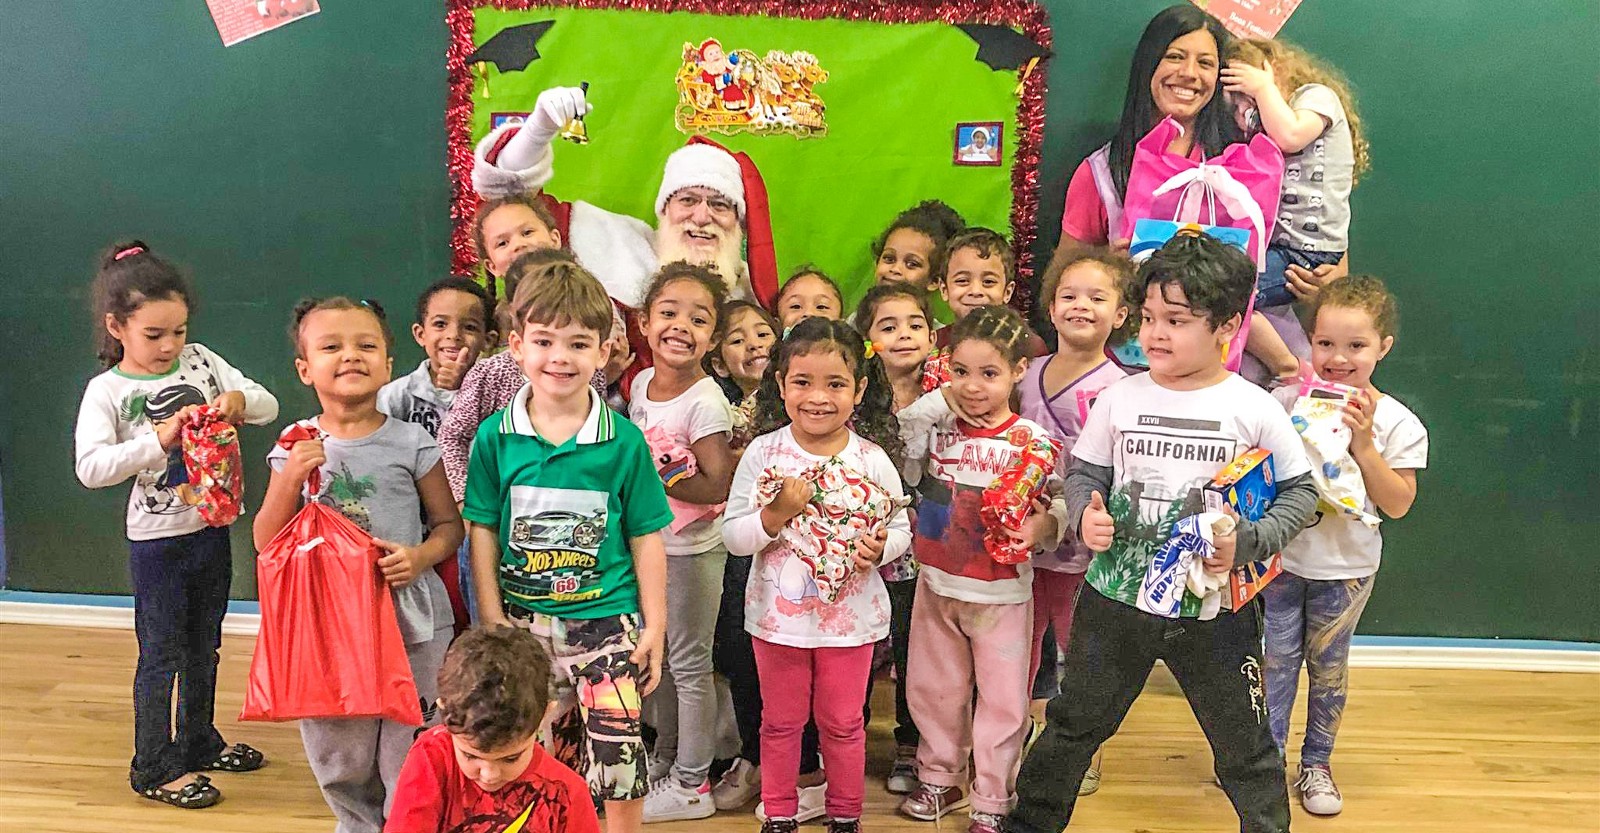 Crianças da zona norte de São Paulo recebem visita do Papai Noel